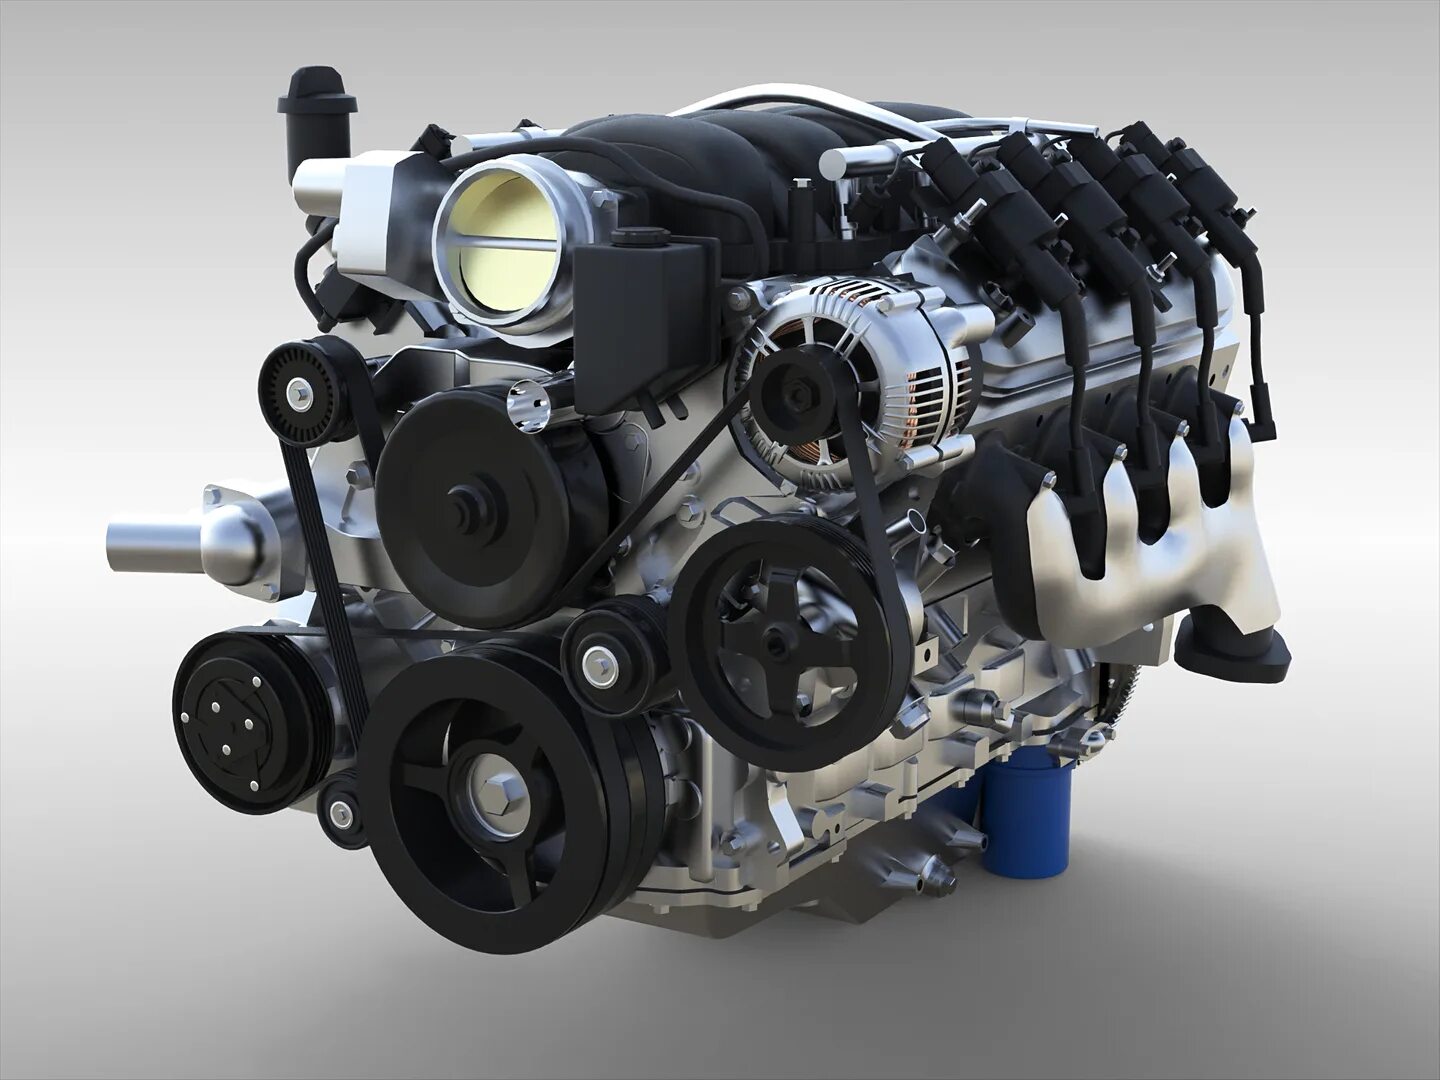 Мотор GM ls3. Мотор Шевроле ls3. V8 ls3 GM Perfomance. LS-3 двигатель характеристики. Двигатель 3 сети